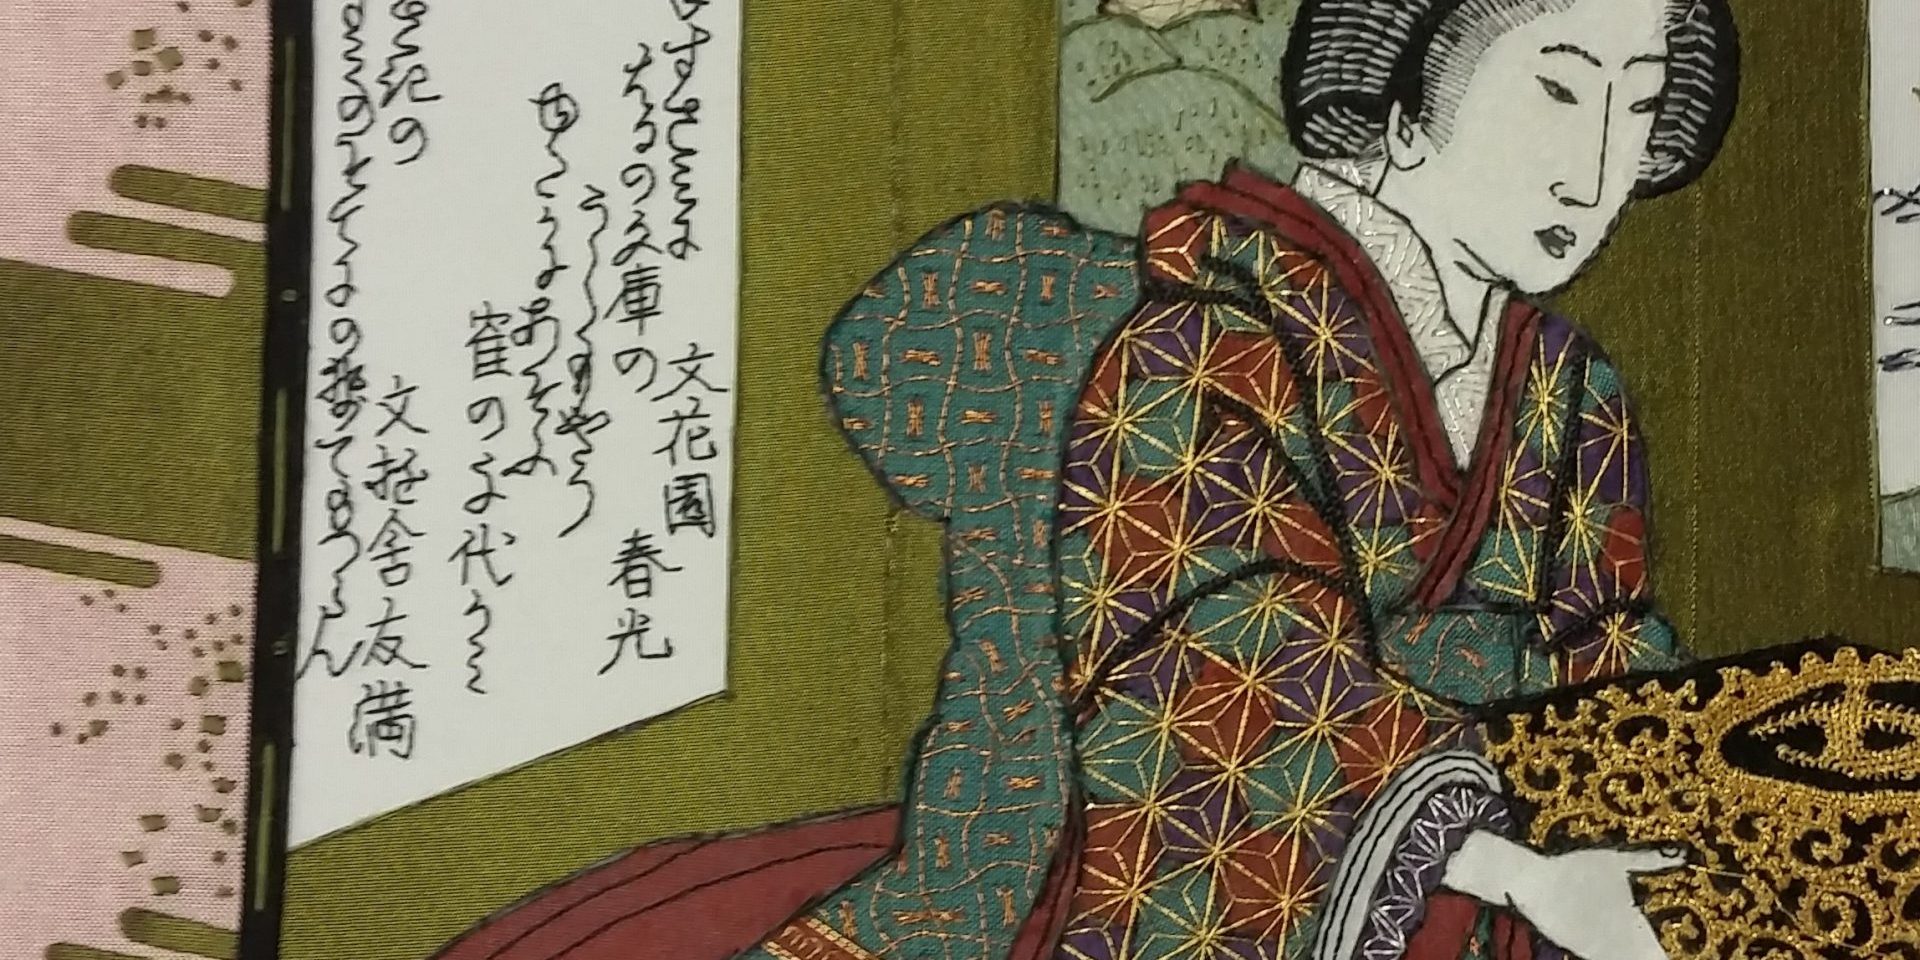 Japanse dame met boekenkist detail